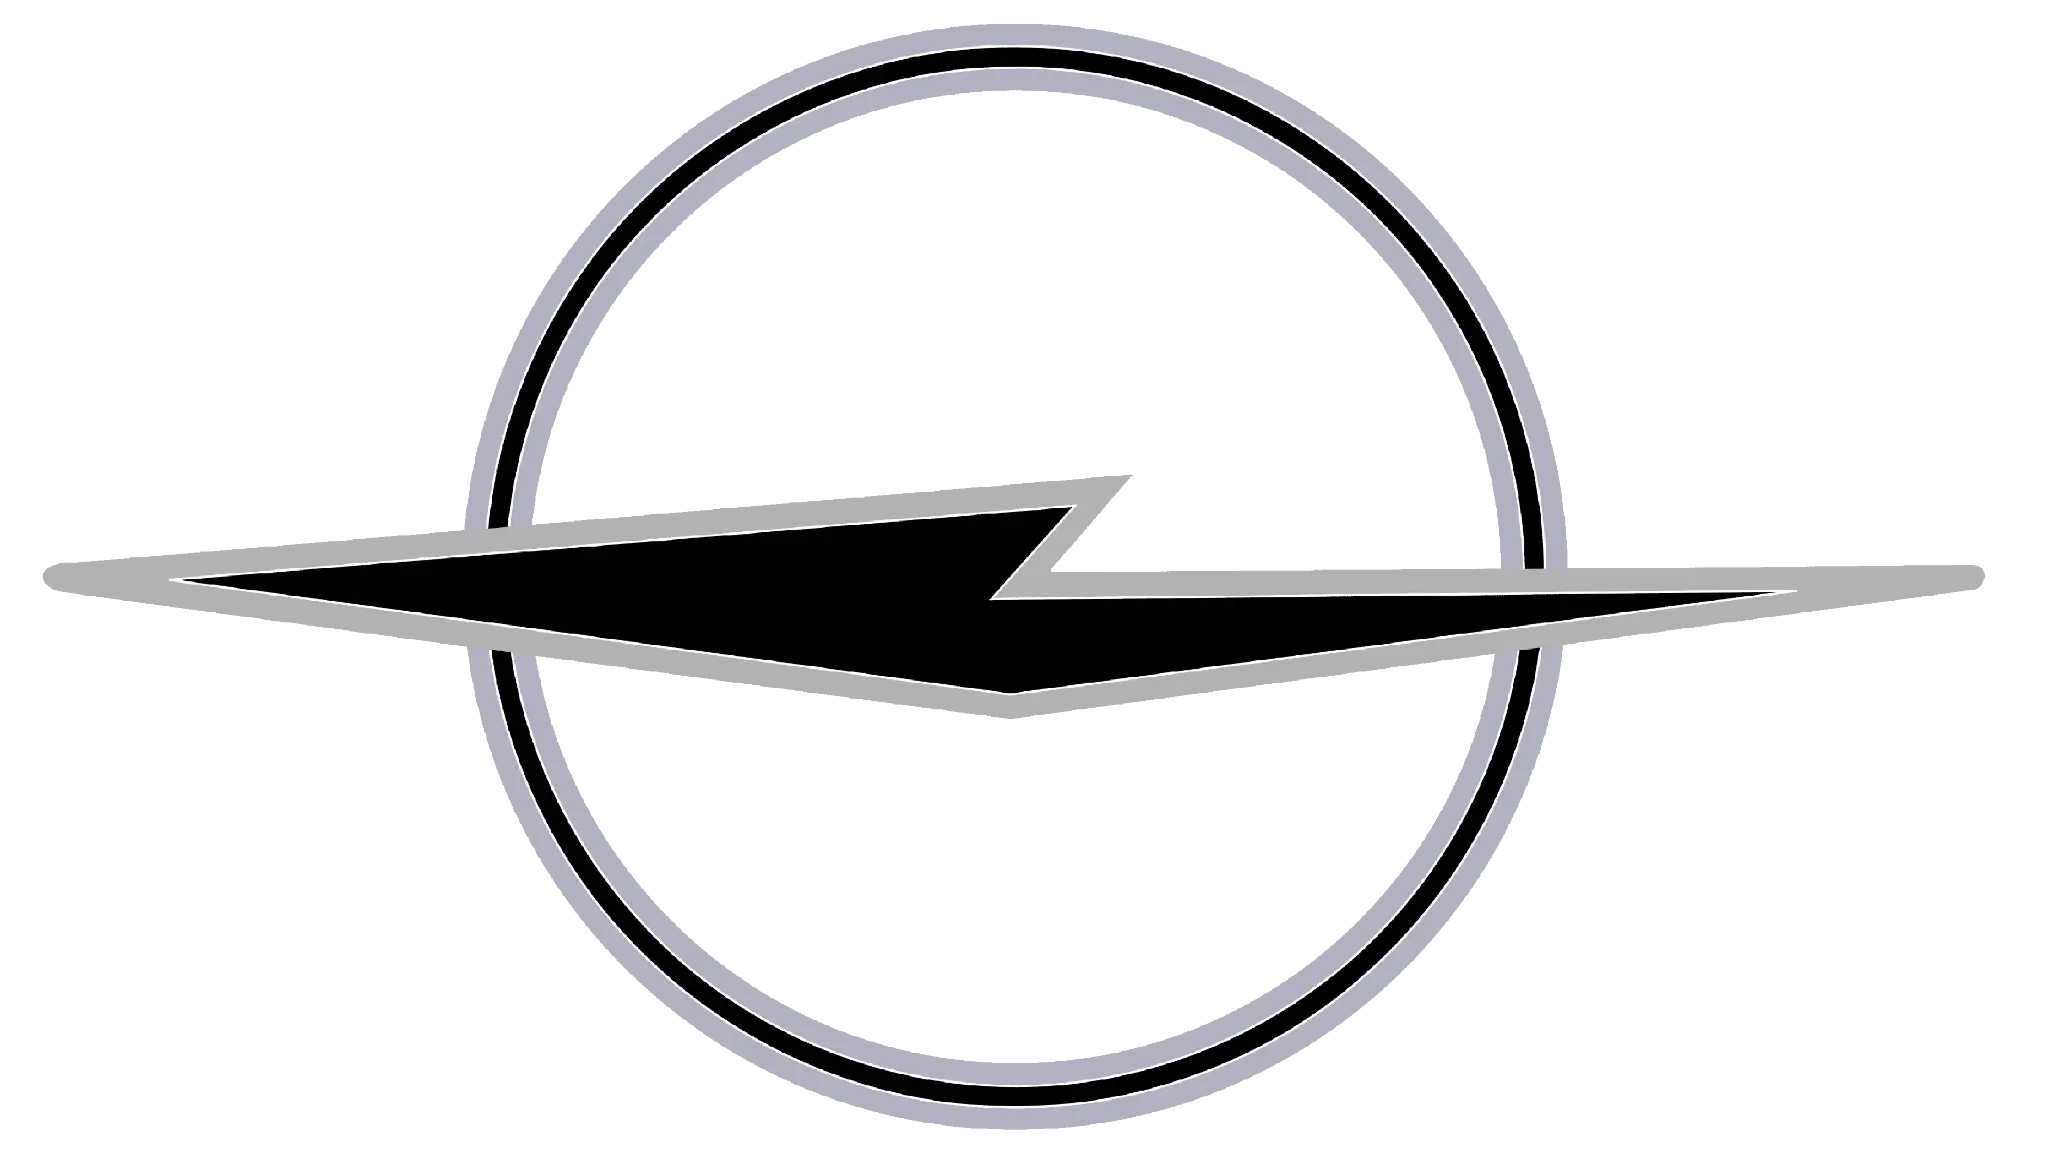 Opel logotipo 1963 circulo com relâmpago preto no meio